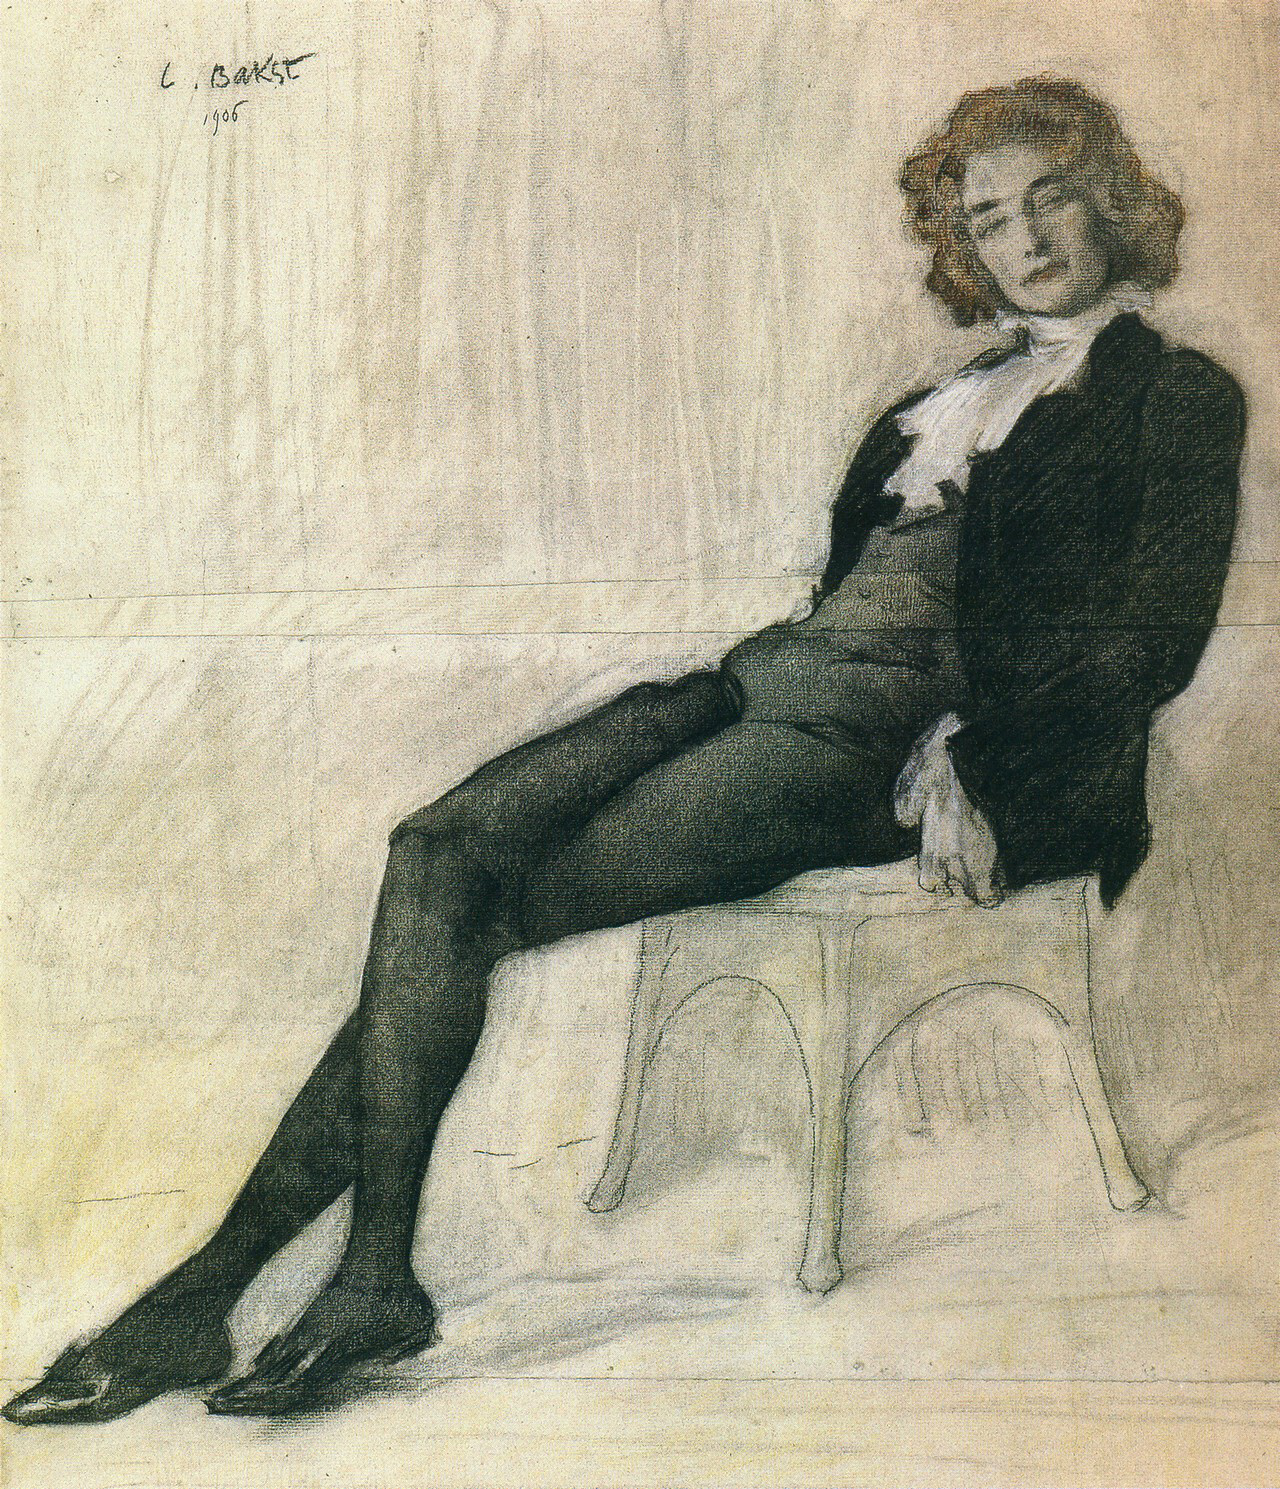 Portrait of Guipius by Leon Bakst, 1906